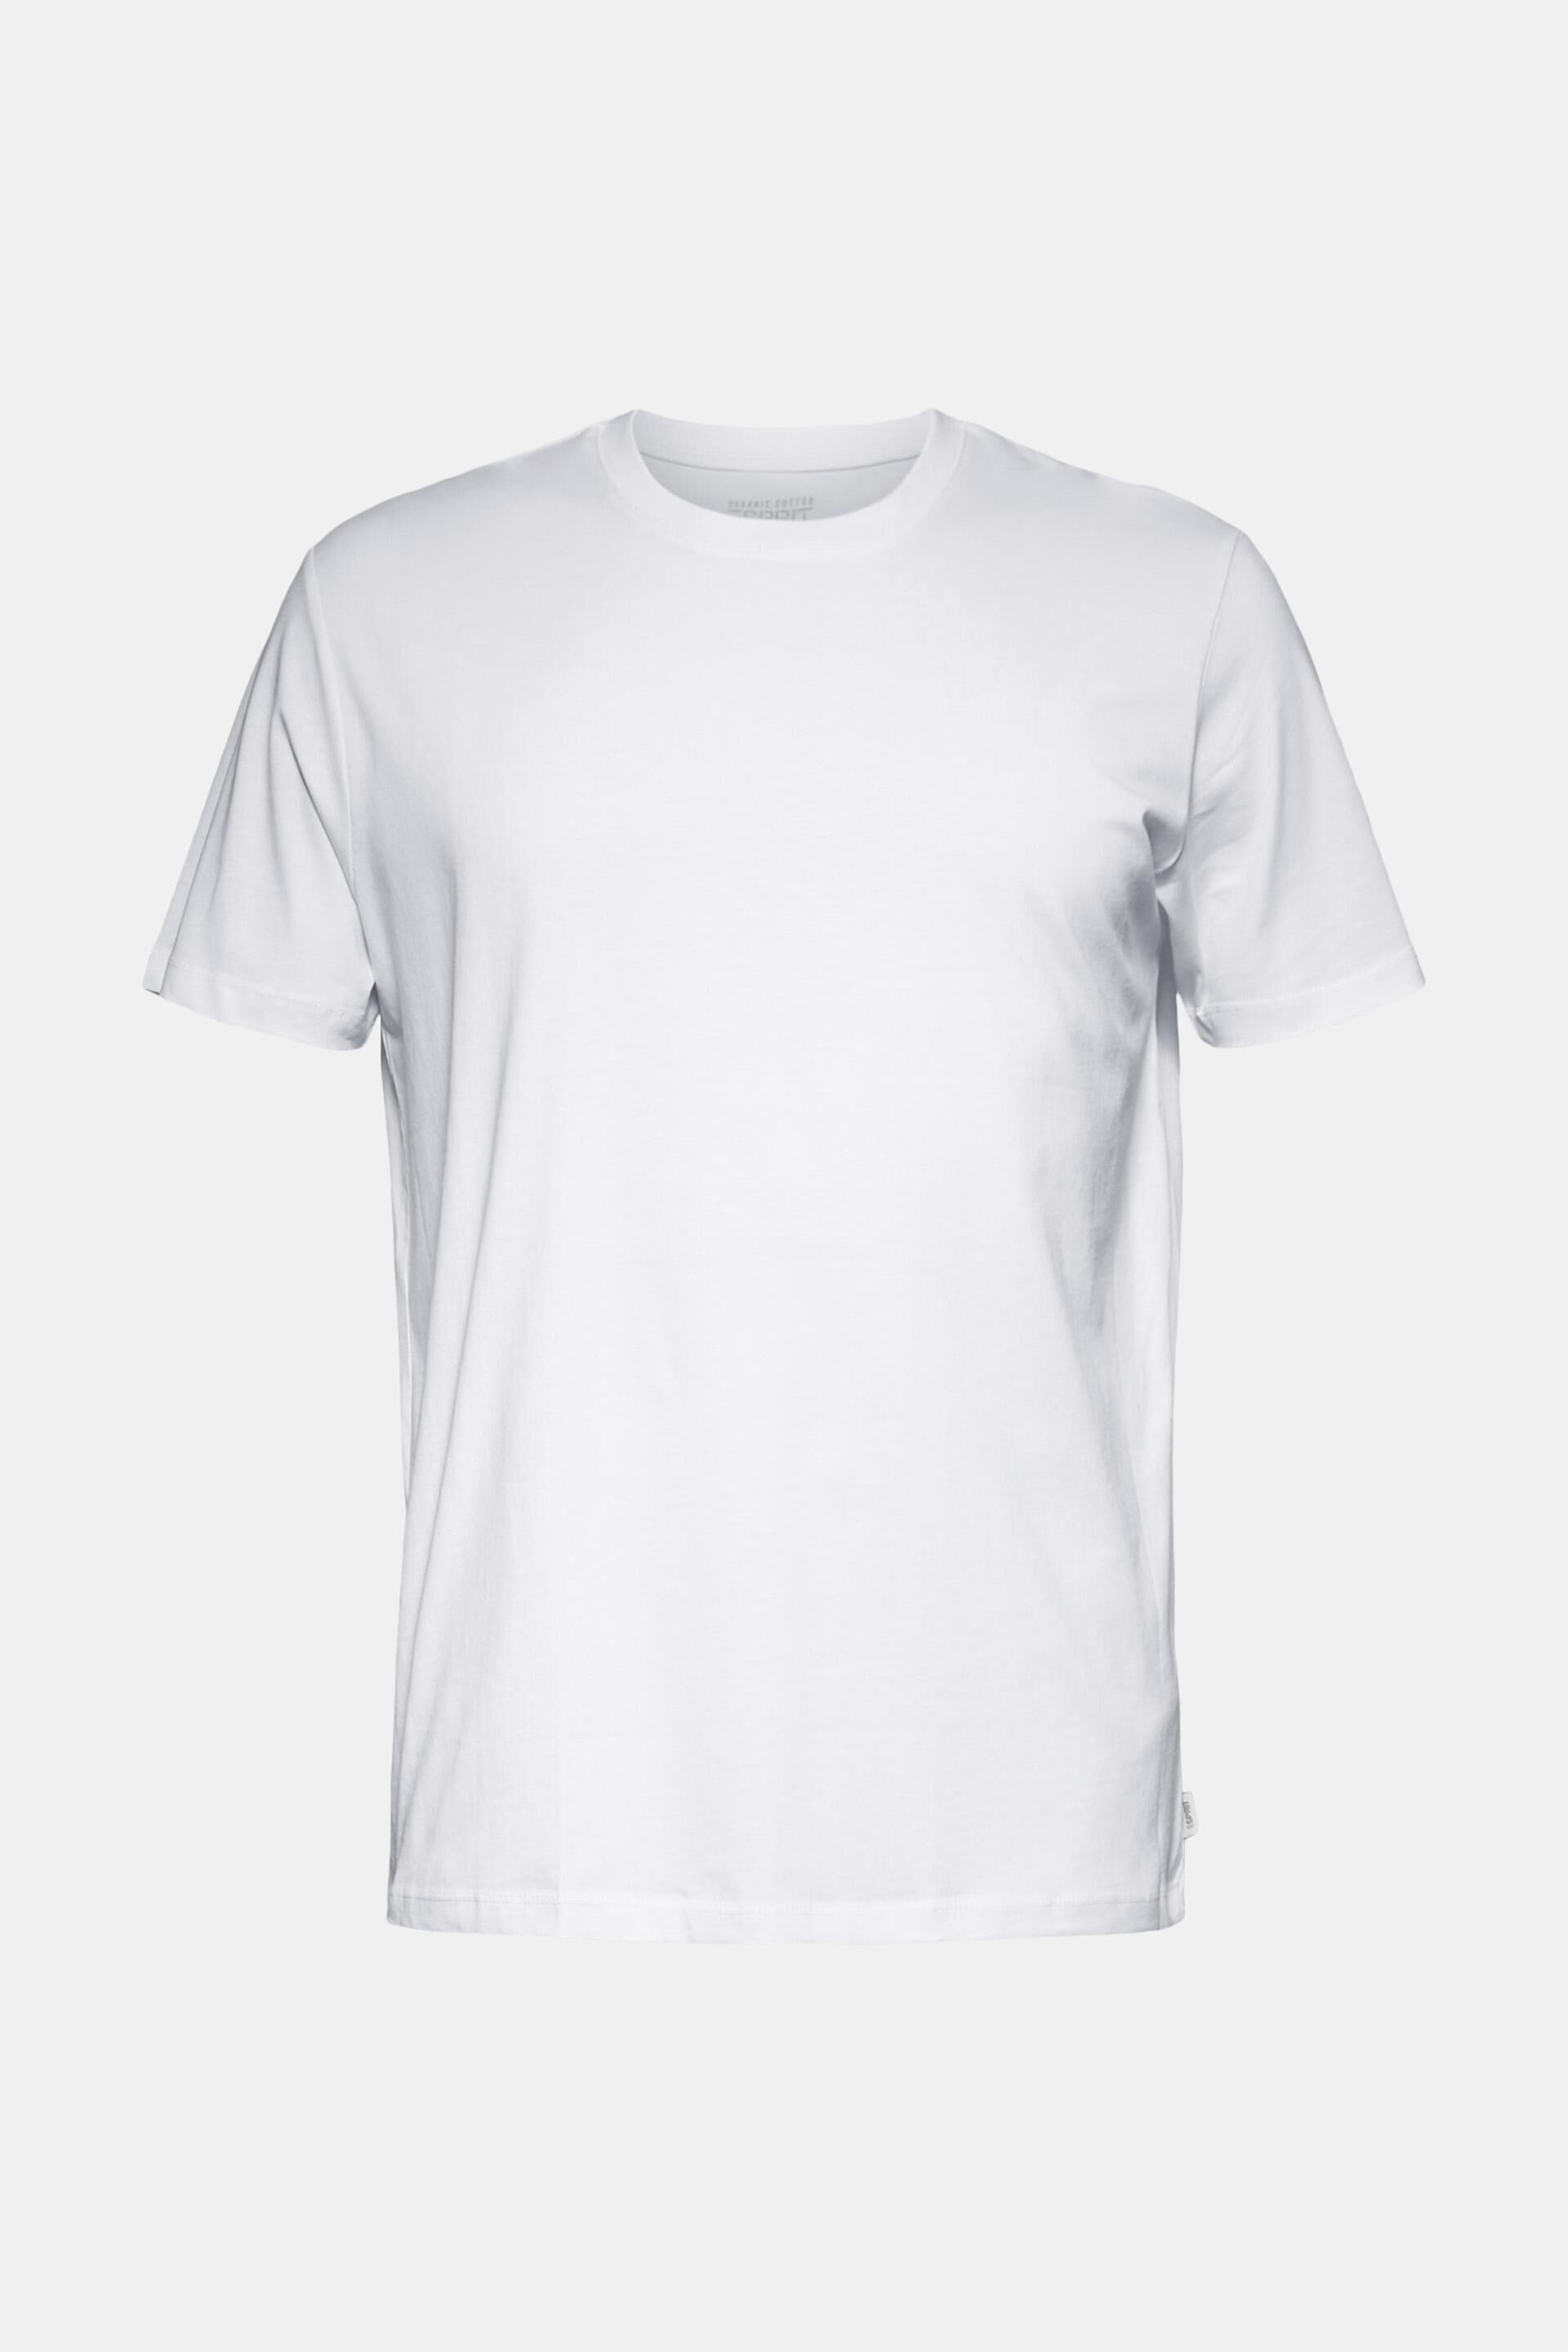 ESPRIT Herren T-Shirt